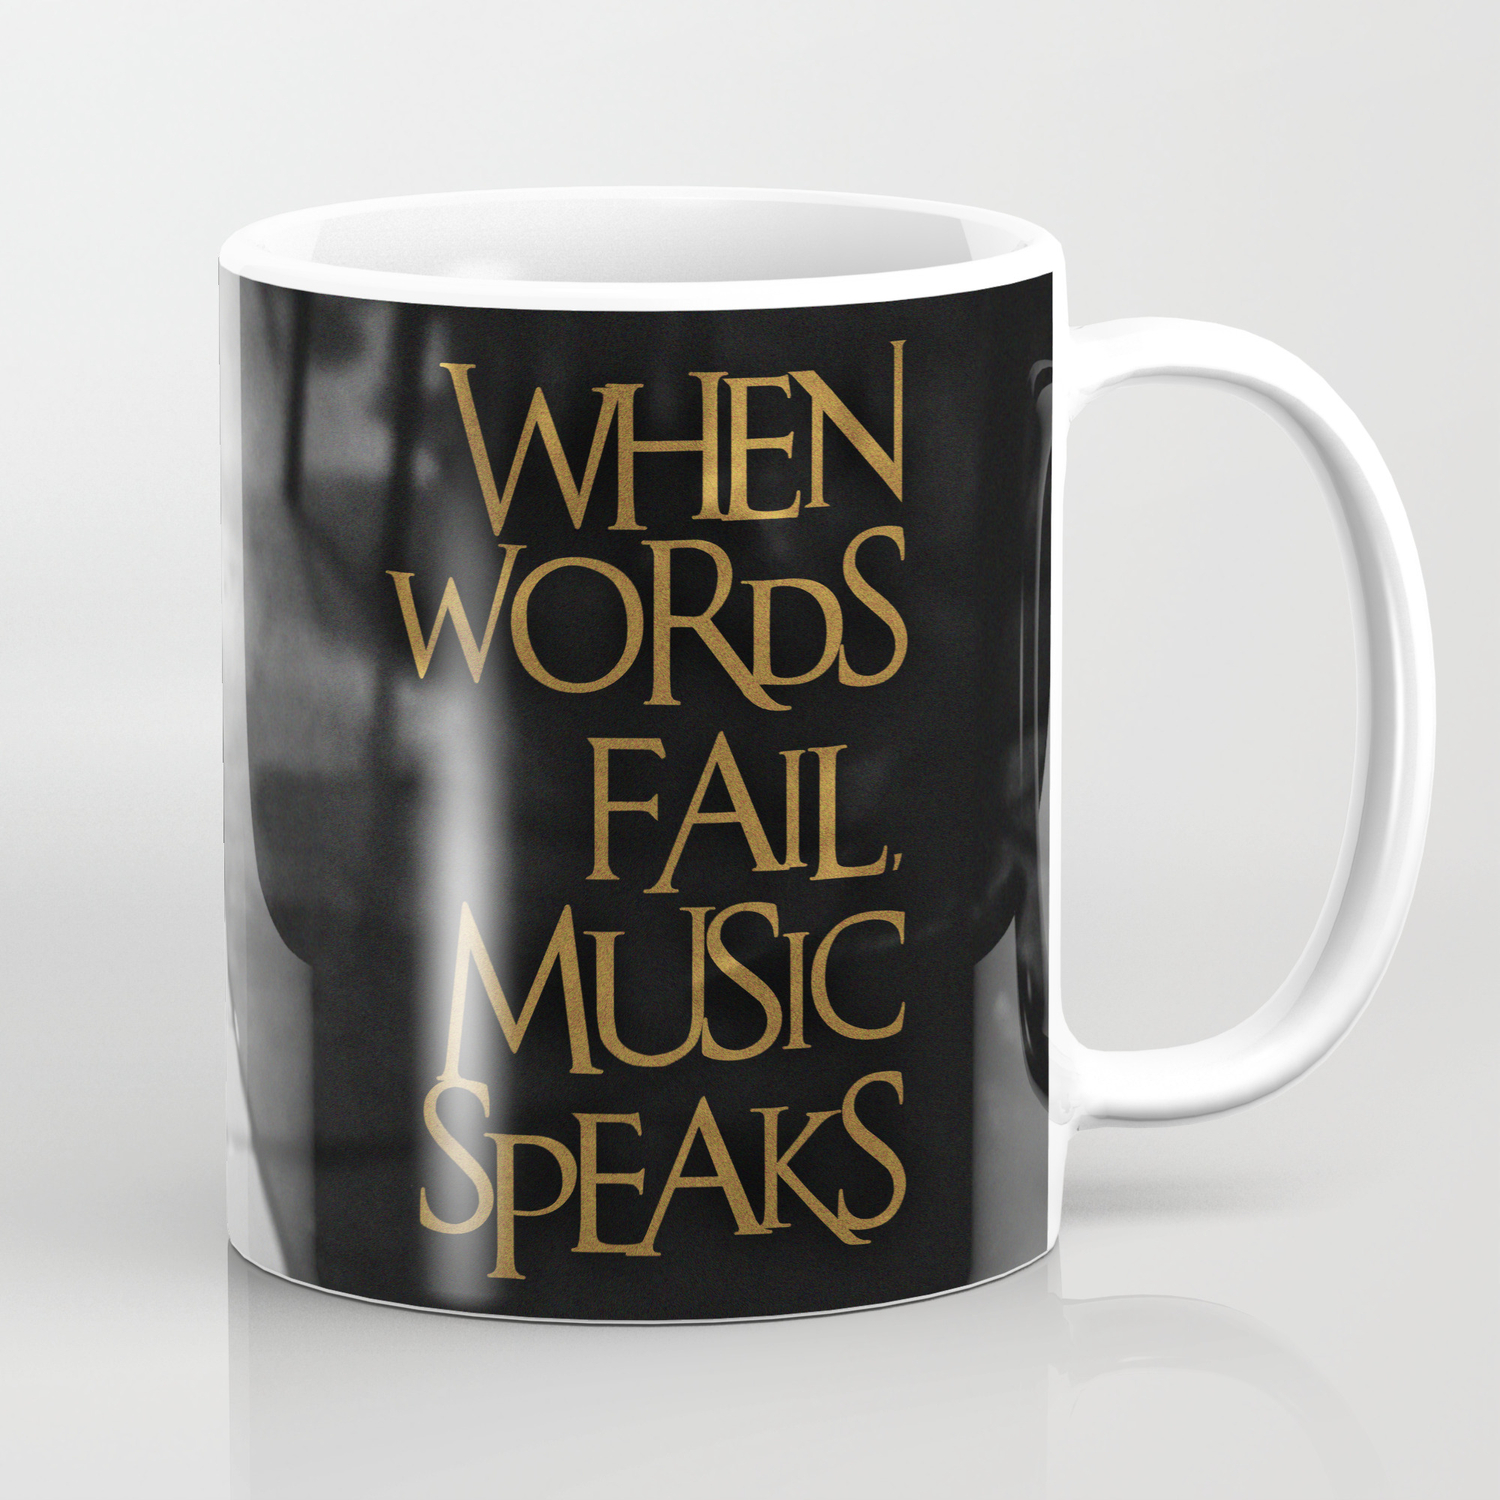 WHEN WORDS FAIL MUSIC SPEAKS Ceramic Coffee Tea Mug Cup 11 Oz 